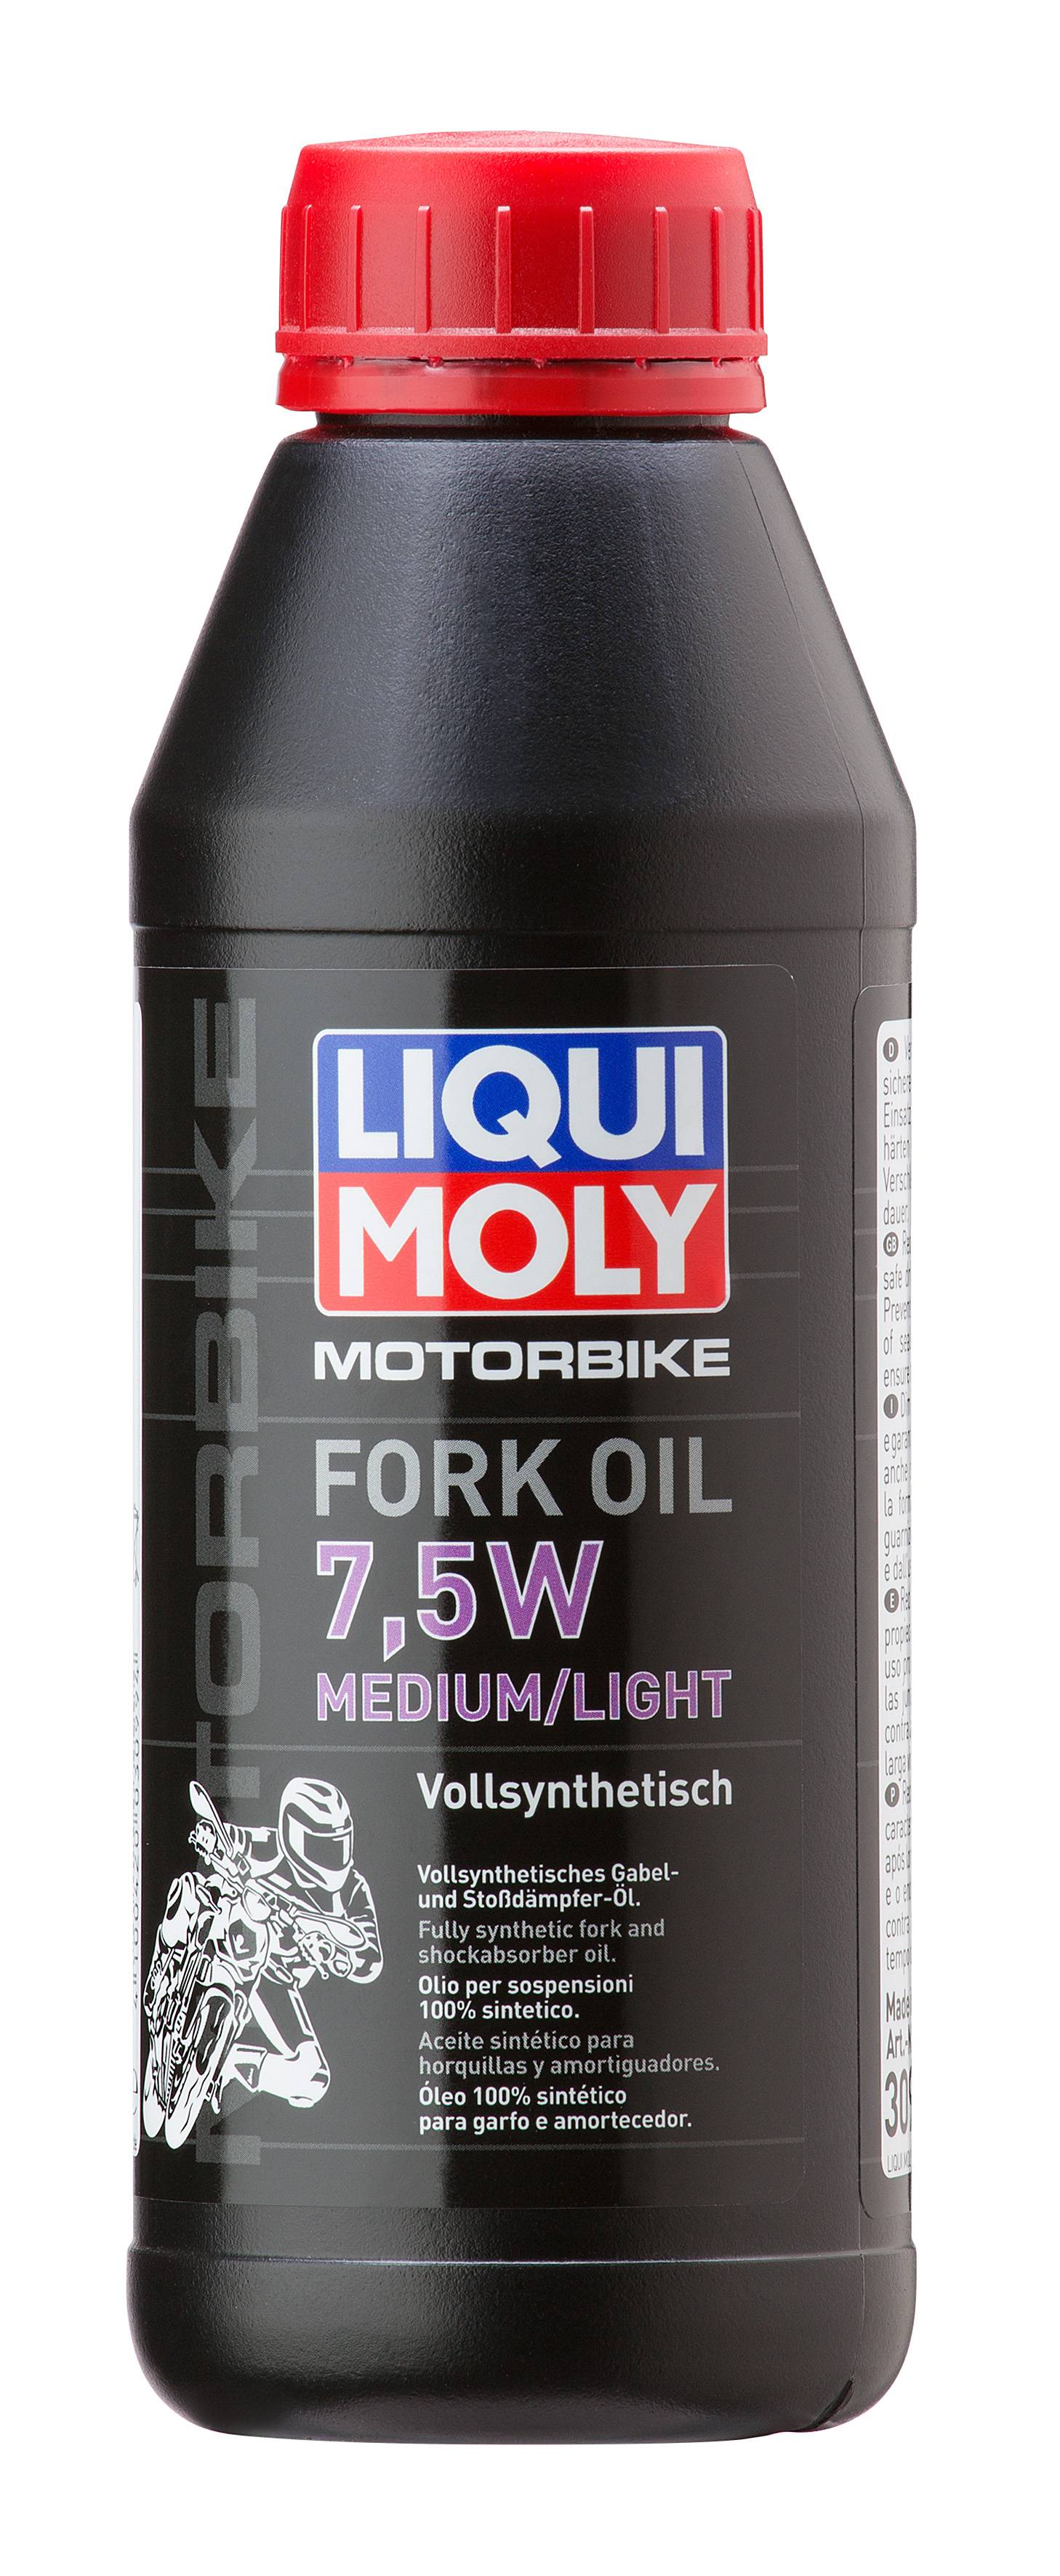 Масло для вилок и амортизаторов "Fork Oil Medium/Light 7.5W", 500мл